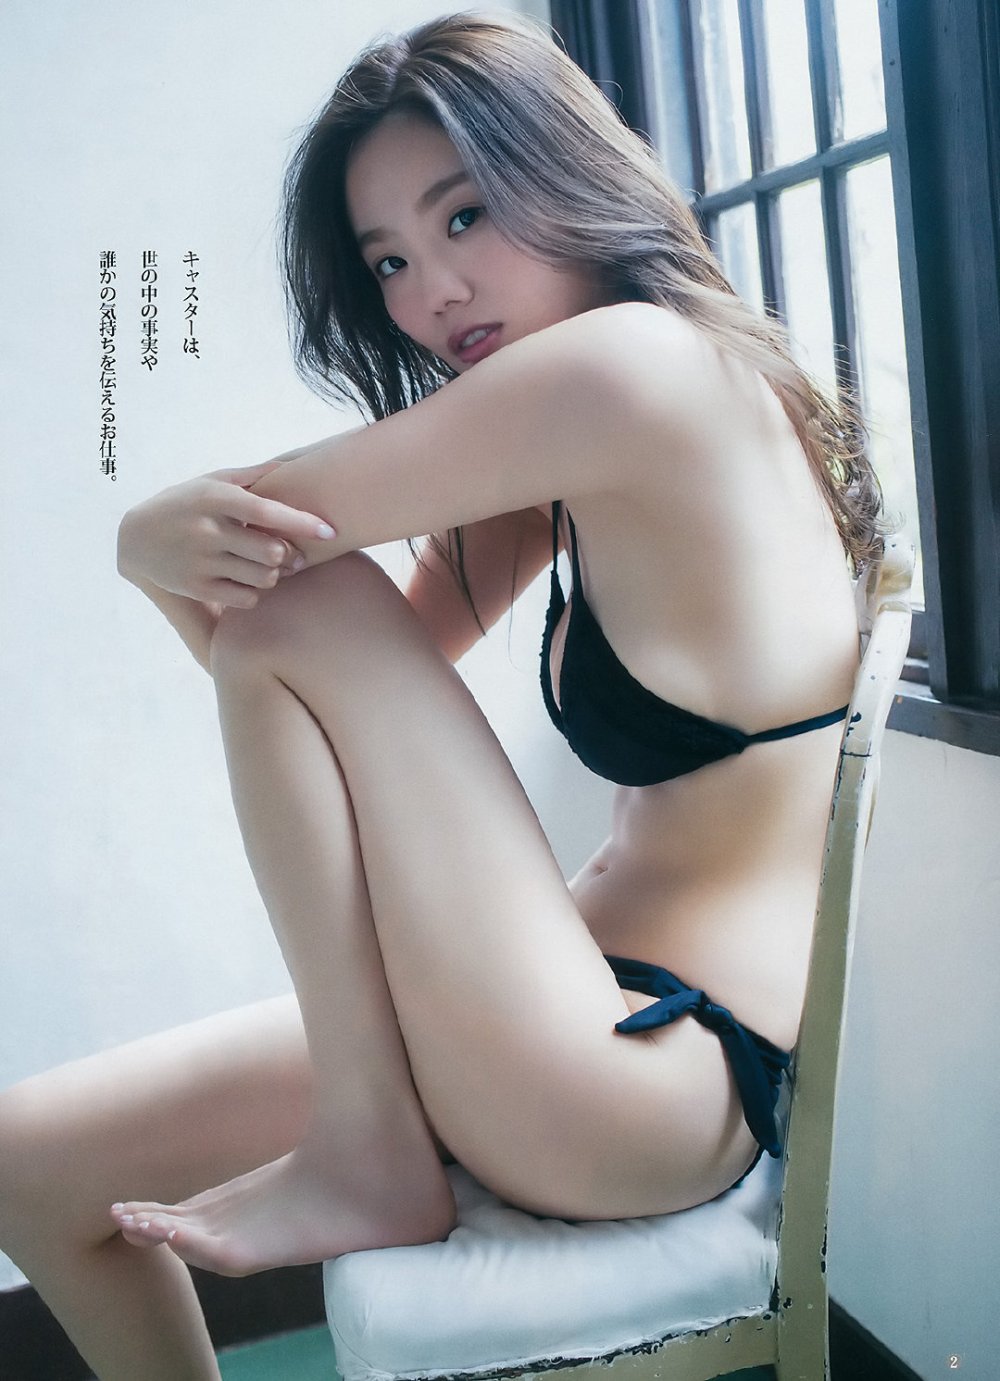 伊东纱冶子 Sexy and Hottest Photos , Latest Pics